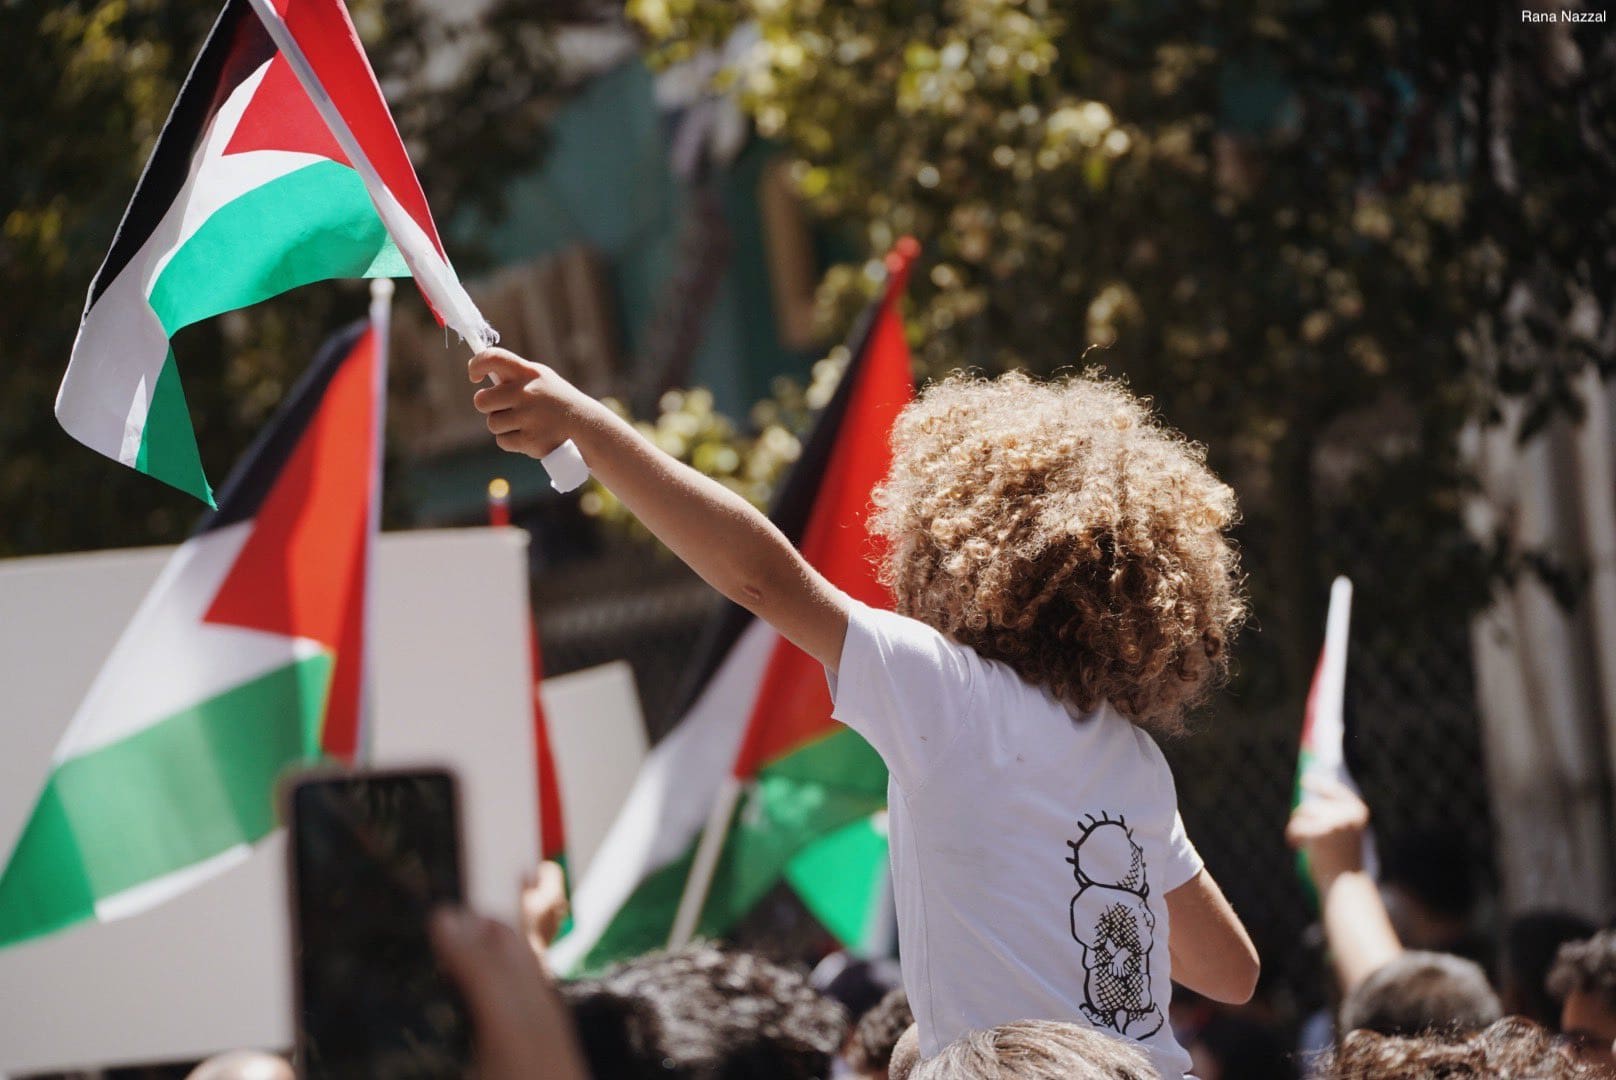 مقال - تحدي التجزئة وأهمية الوحدة: انتفاضة فلسطينية جديدة